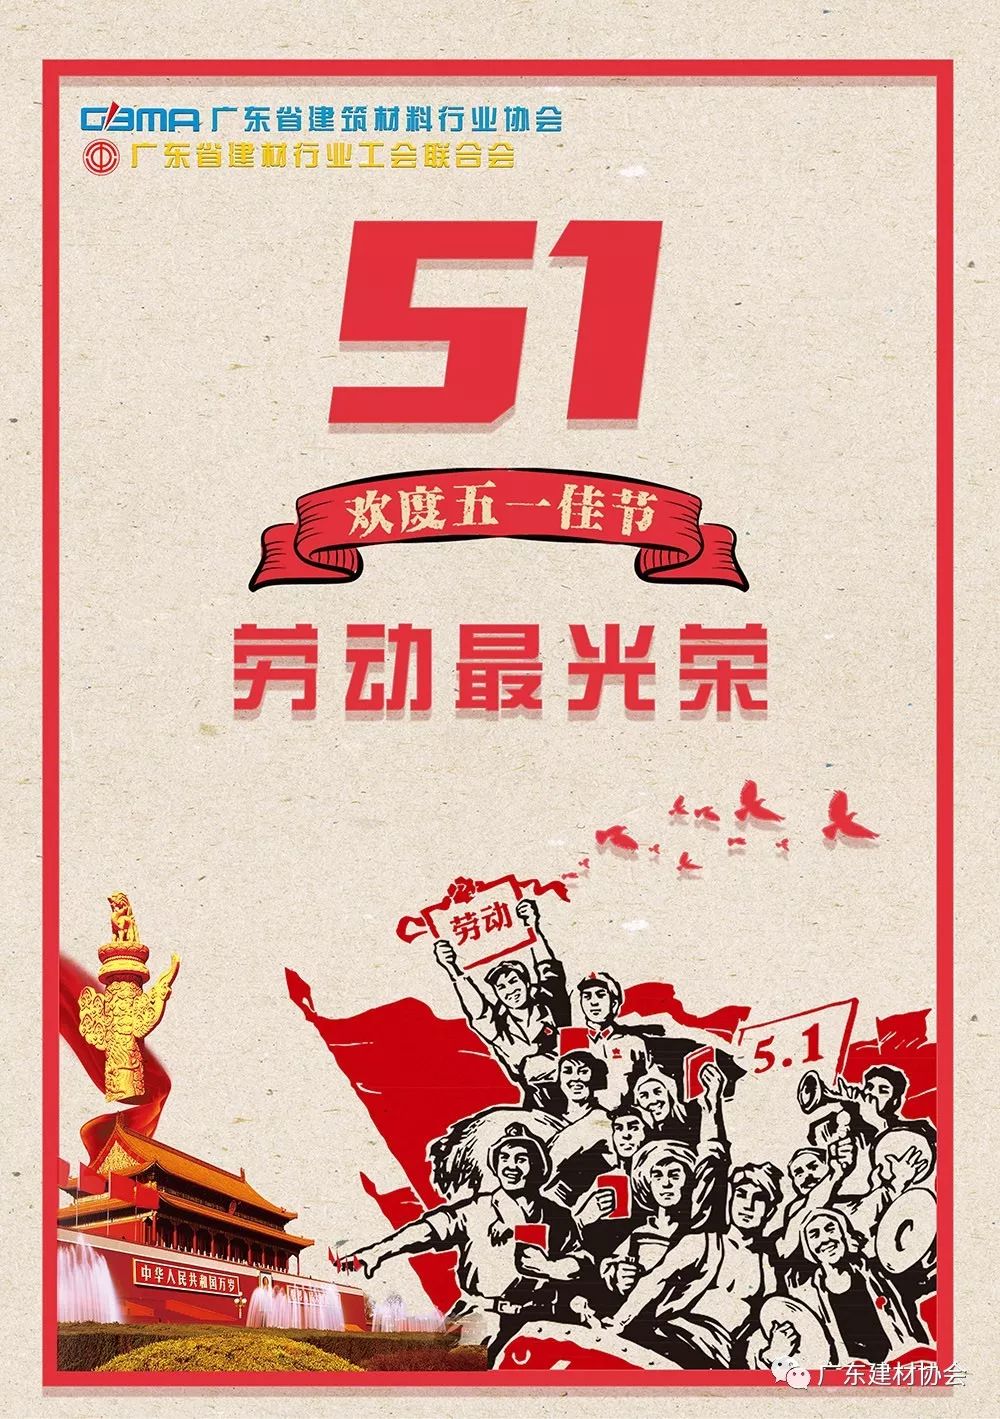 广东省建材行业协会,广东省建材行业工会联合会祝您五一国际劳动节